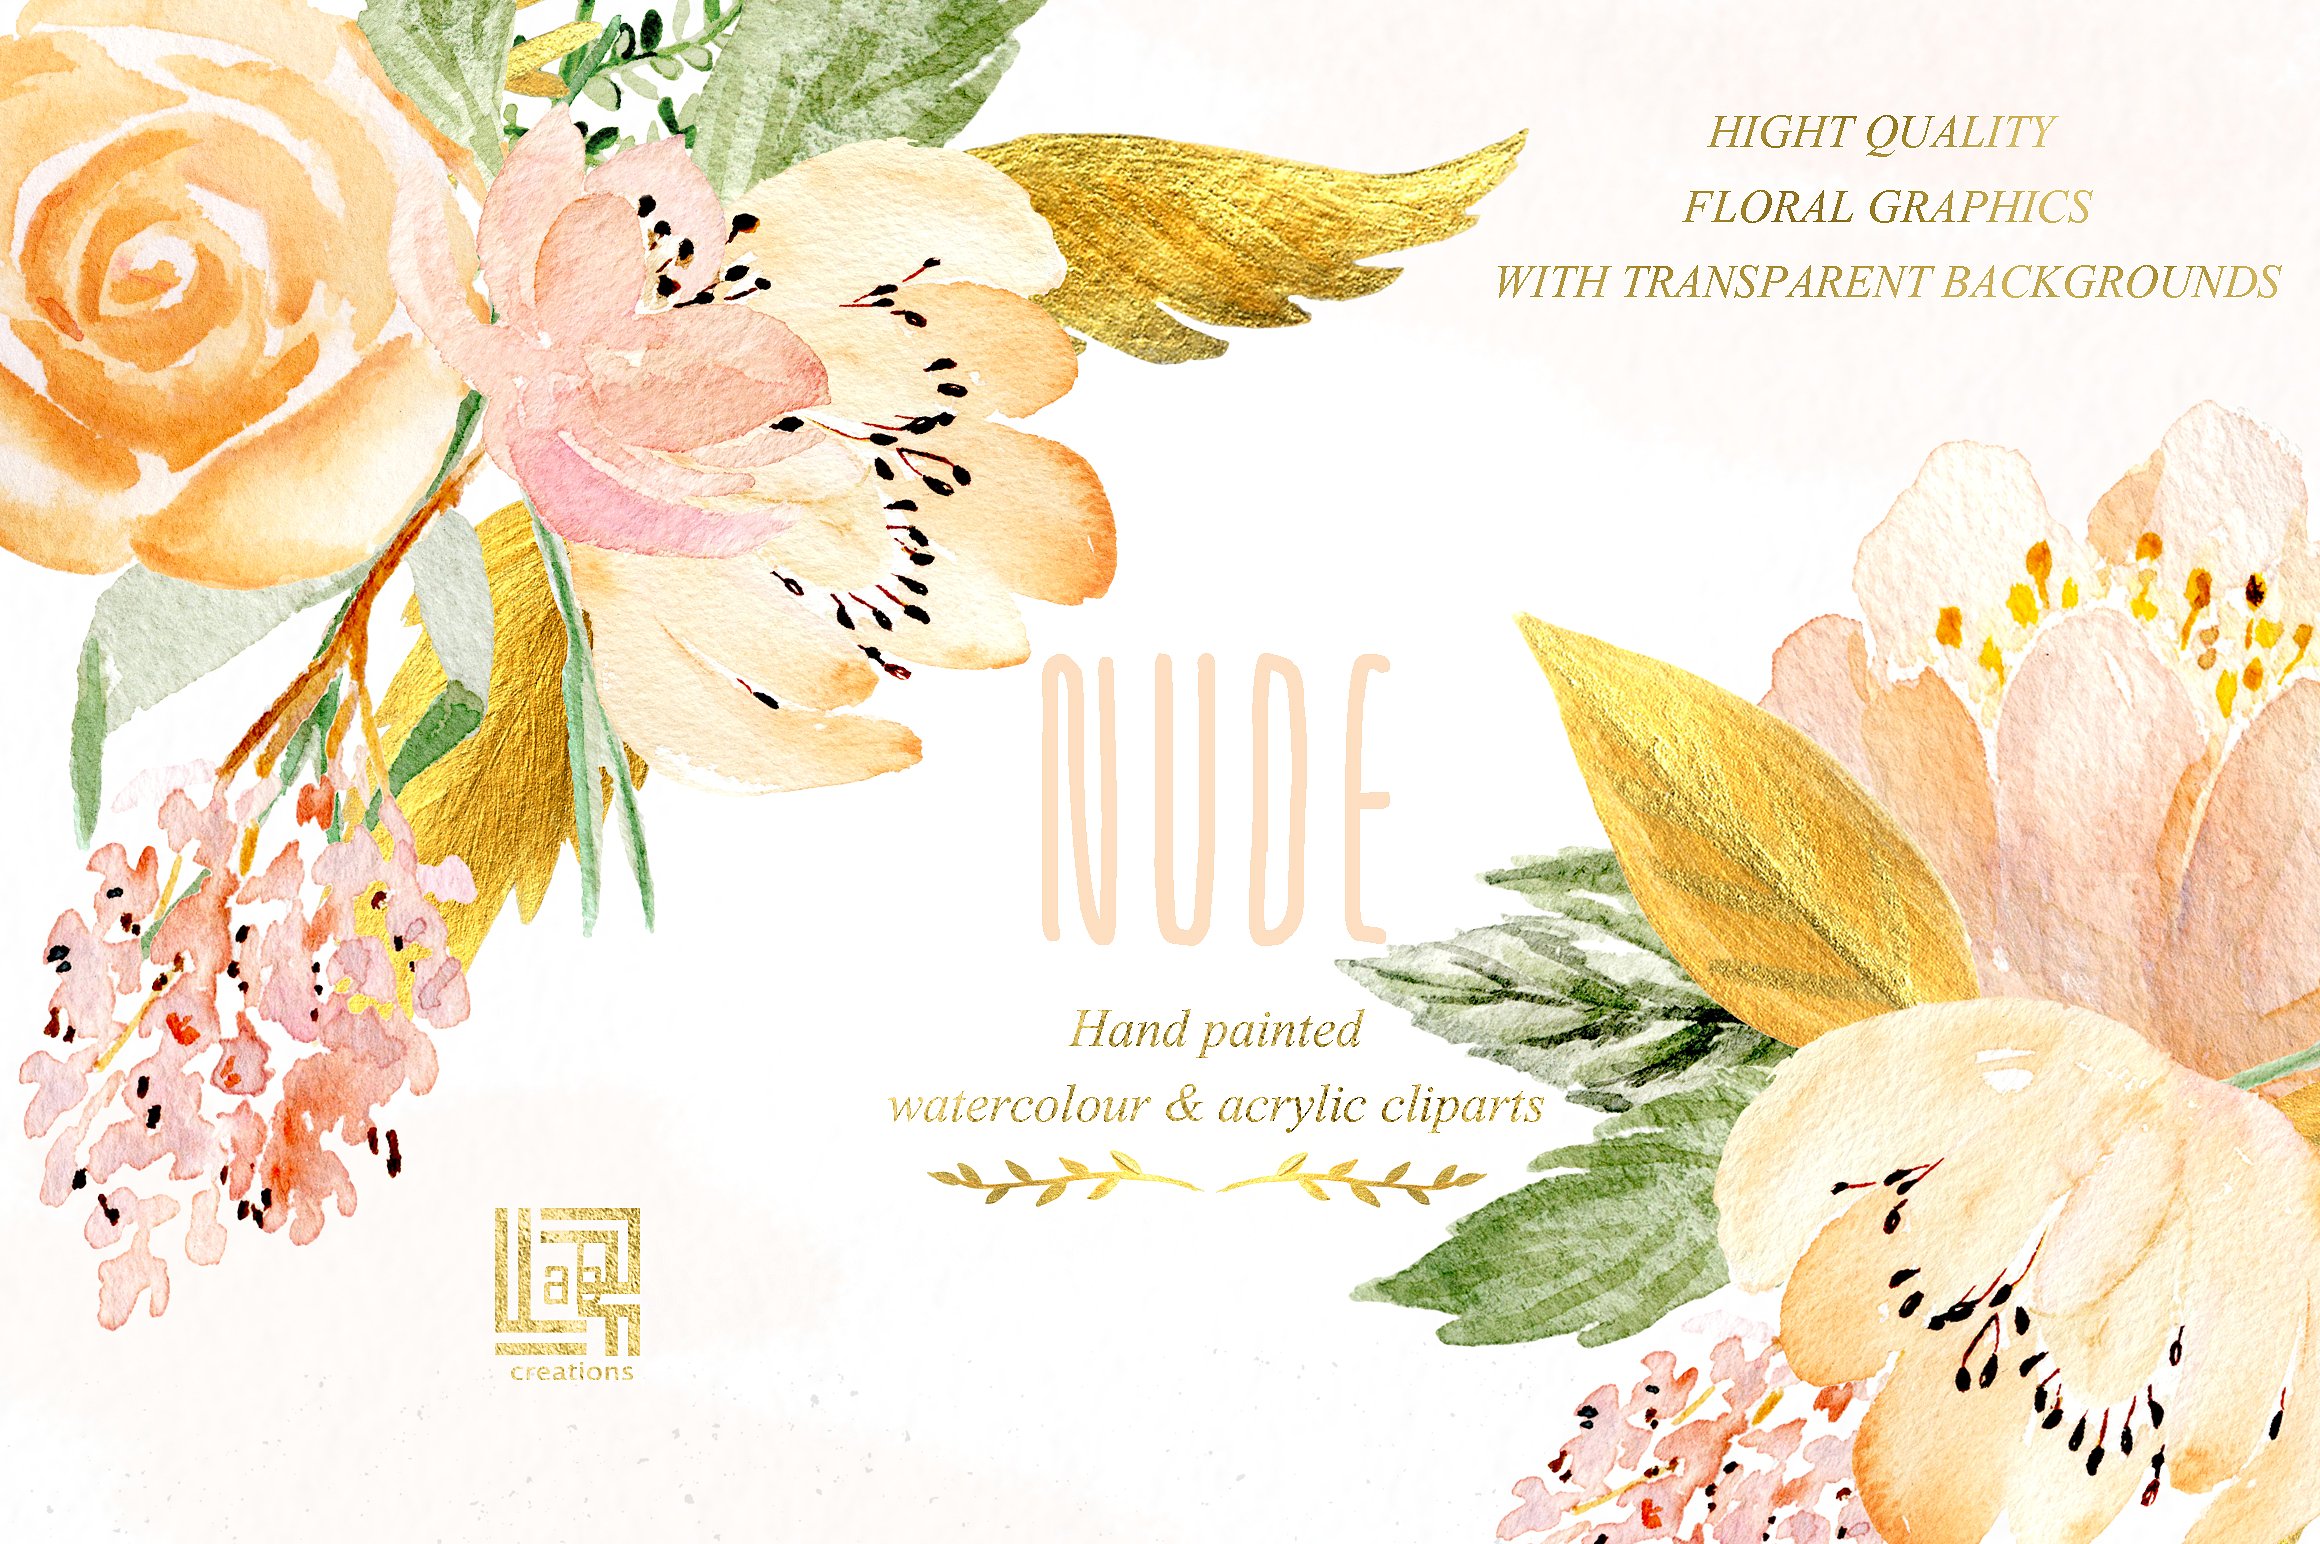 裸色与黄金水彩花卉设计素材 Nude & gold